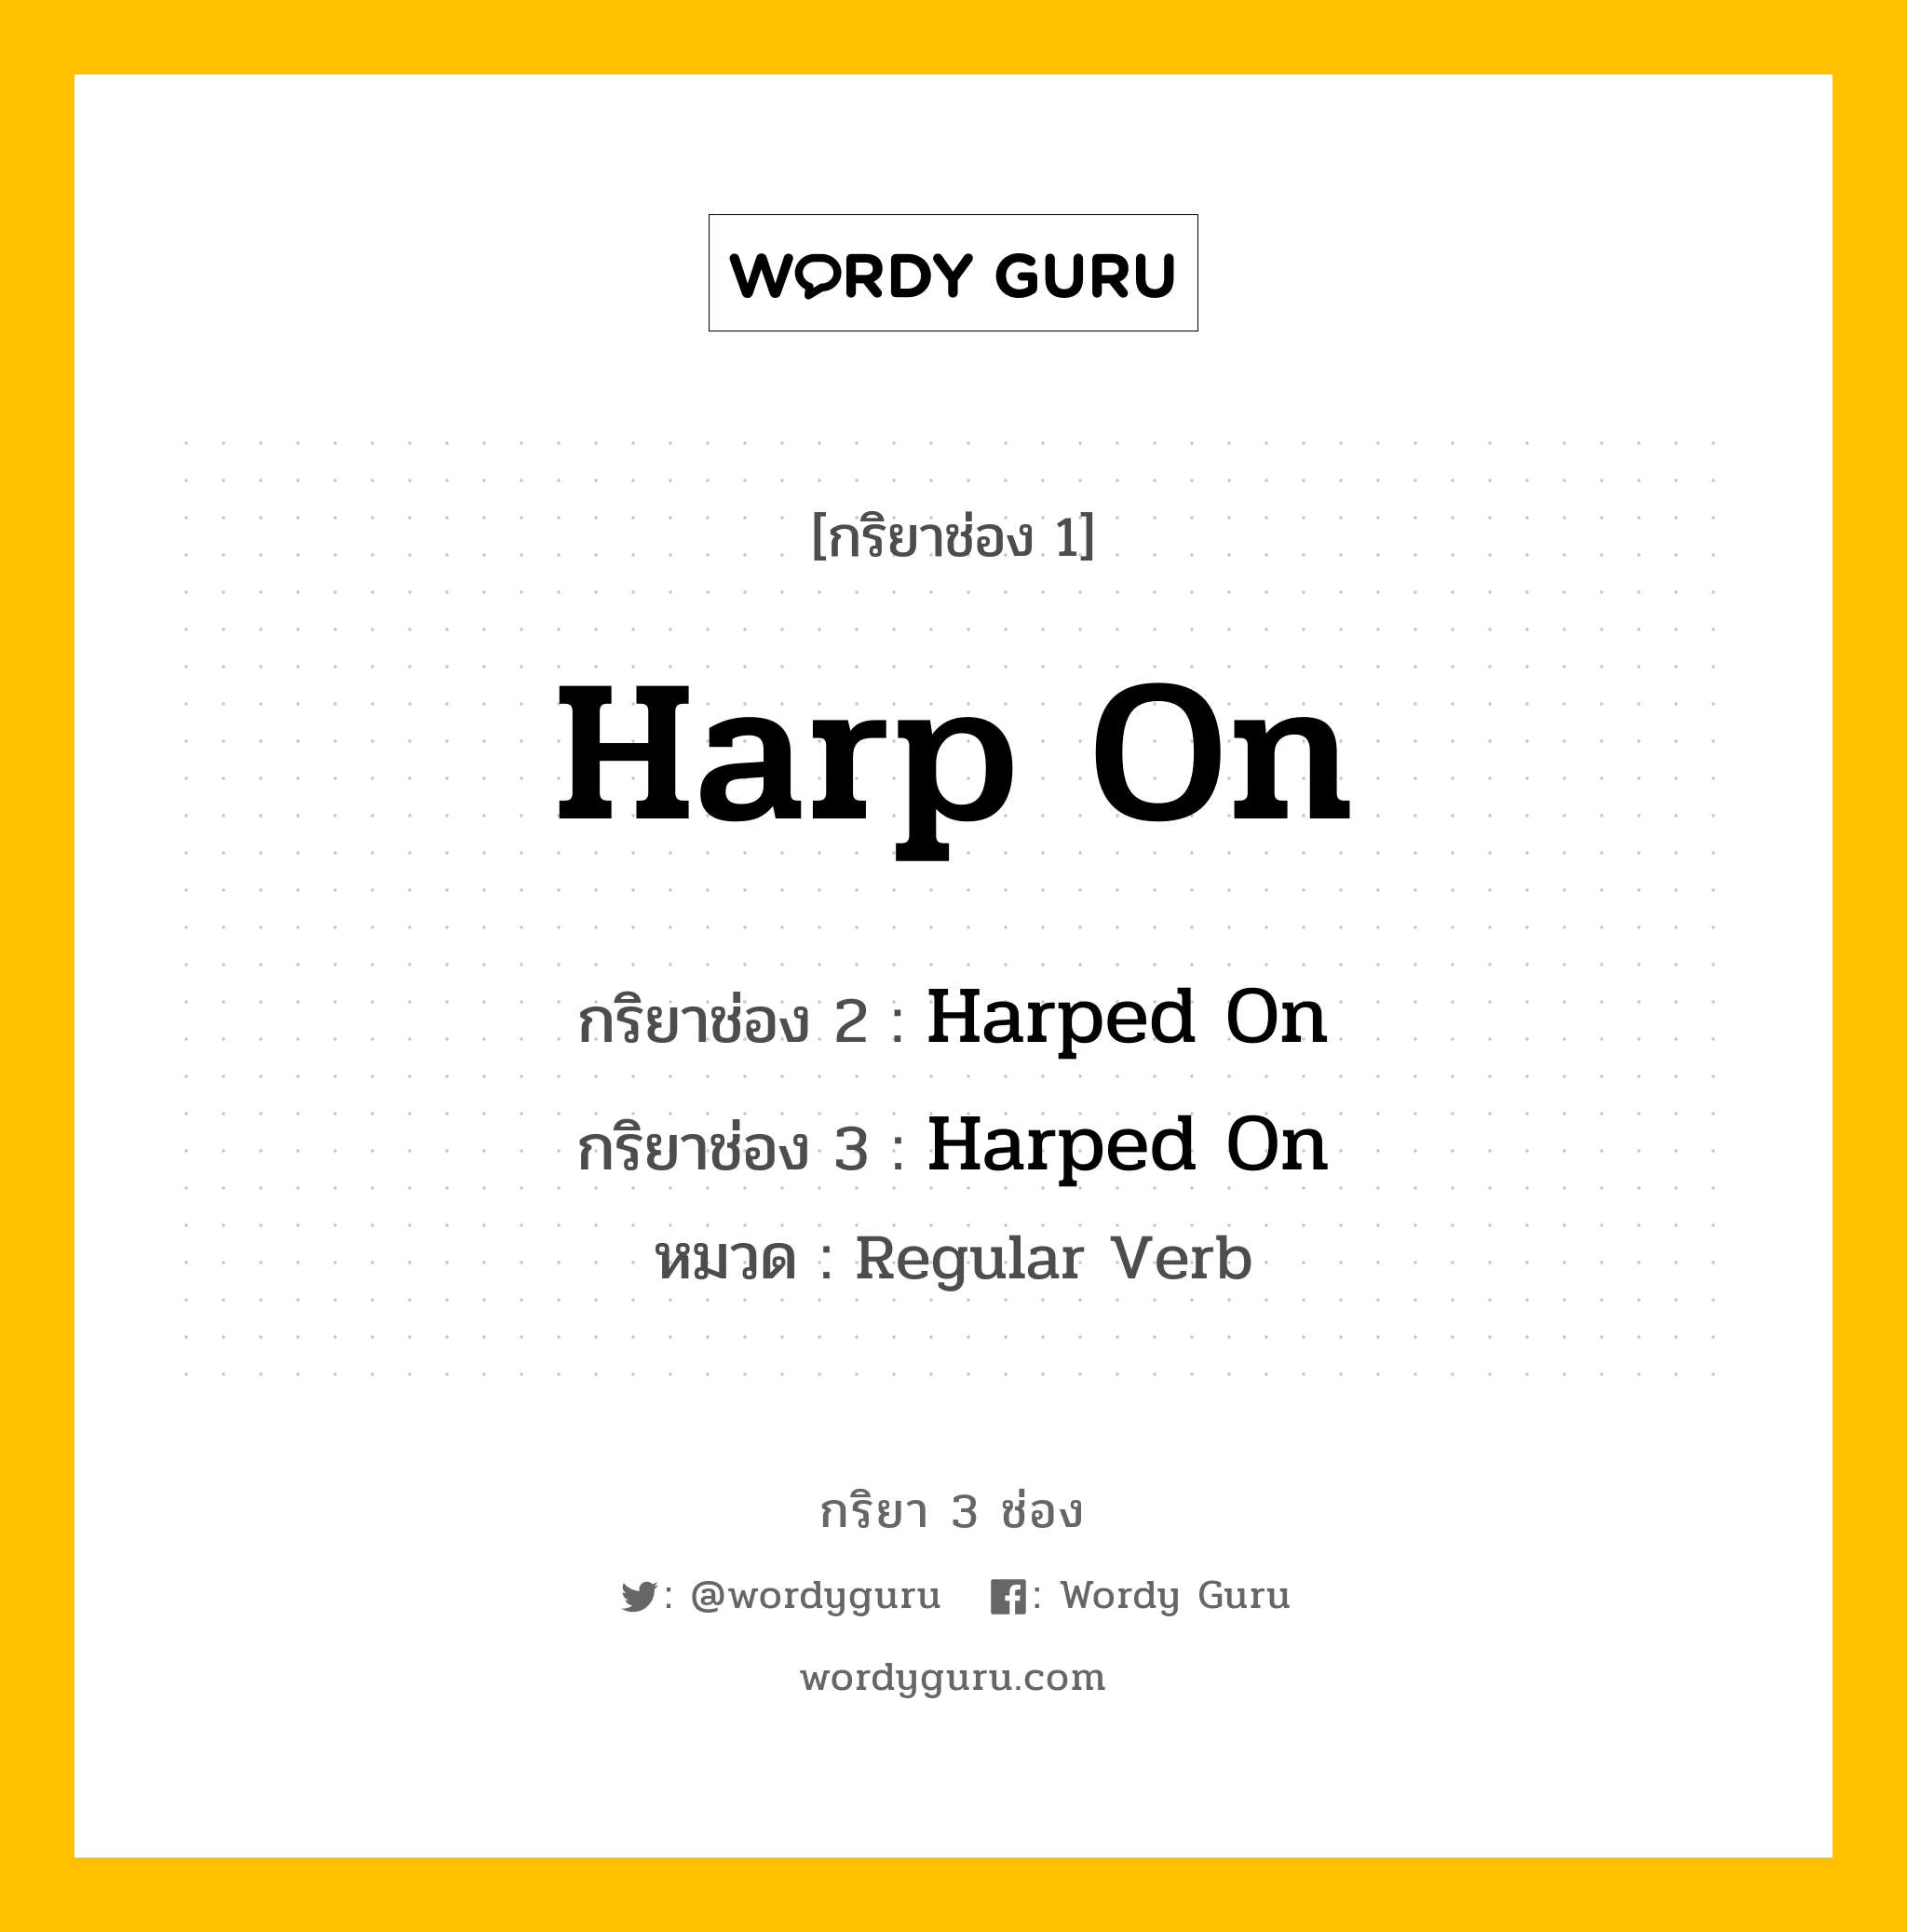 กริยา 3 ช่อง: Harp On ช่อง 2 Harp On ช่อง 3 คืออะไร, กริยาช่อง 1 Harp On กริยาช่อง 2 Harped On กริยาช่อง 3 Harped On หมวด Regular Verb หมวด Regular Verb